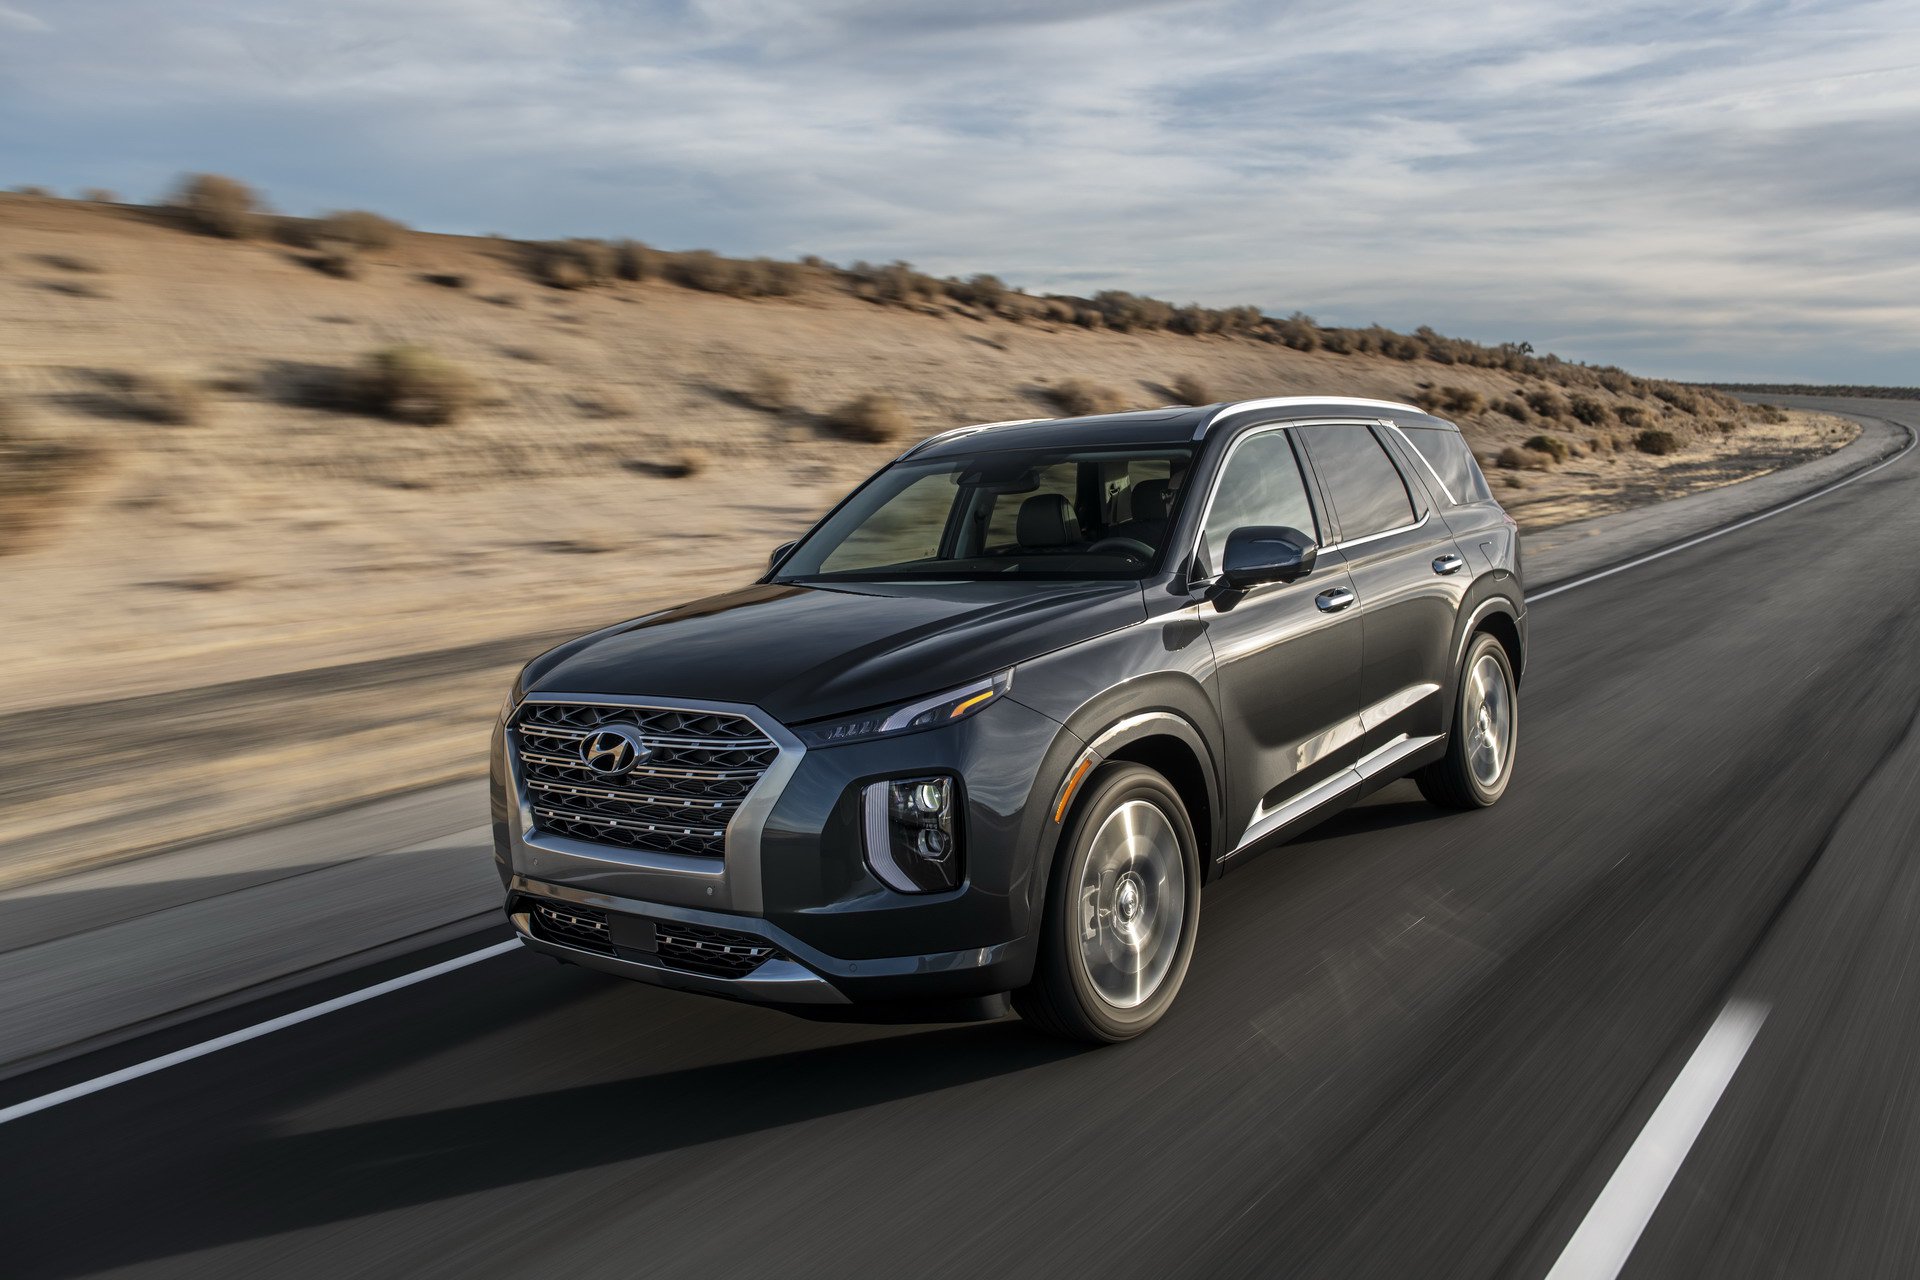 Hyundai'nin 7 kişilik SUV modeli Palisade tanıtıldı